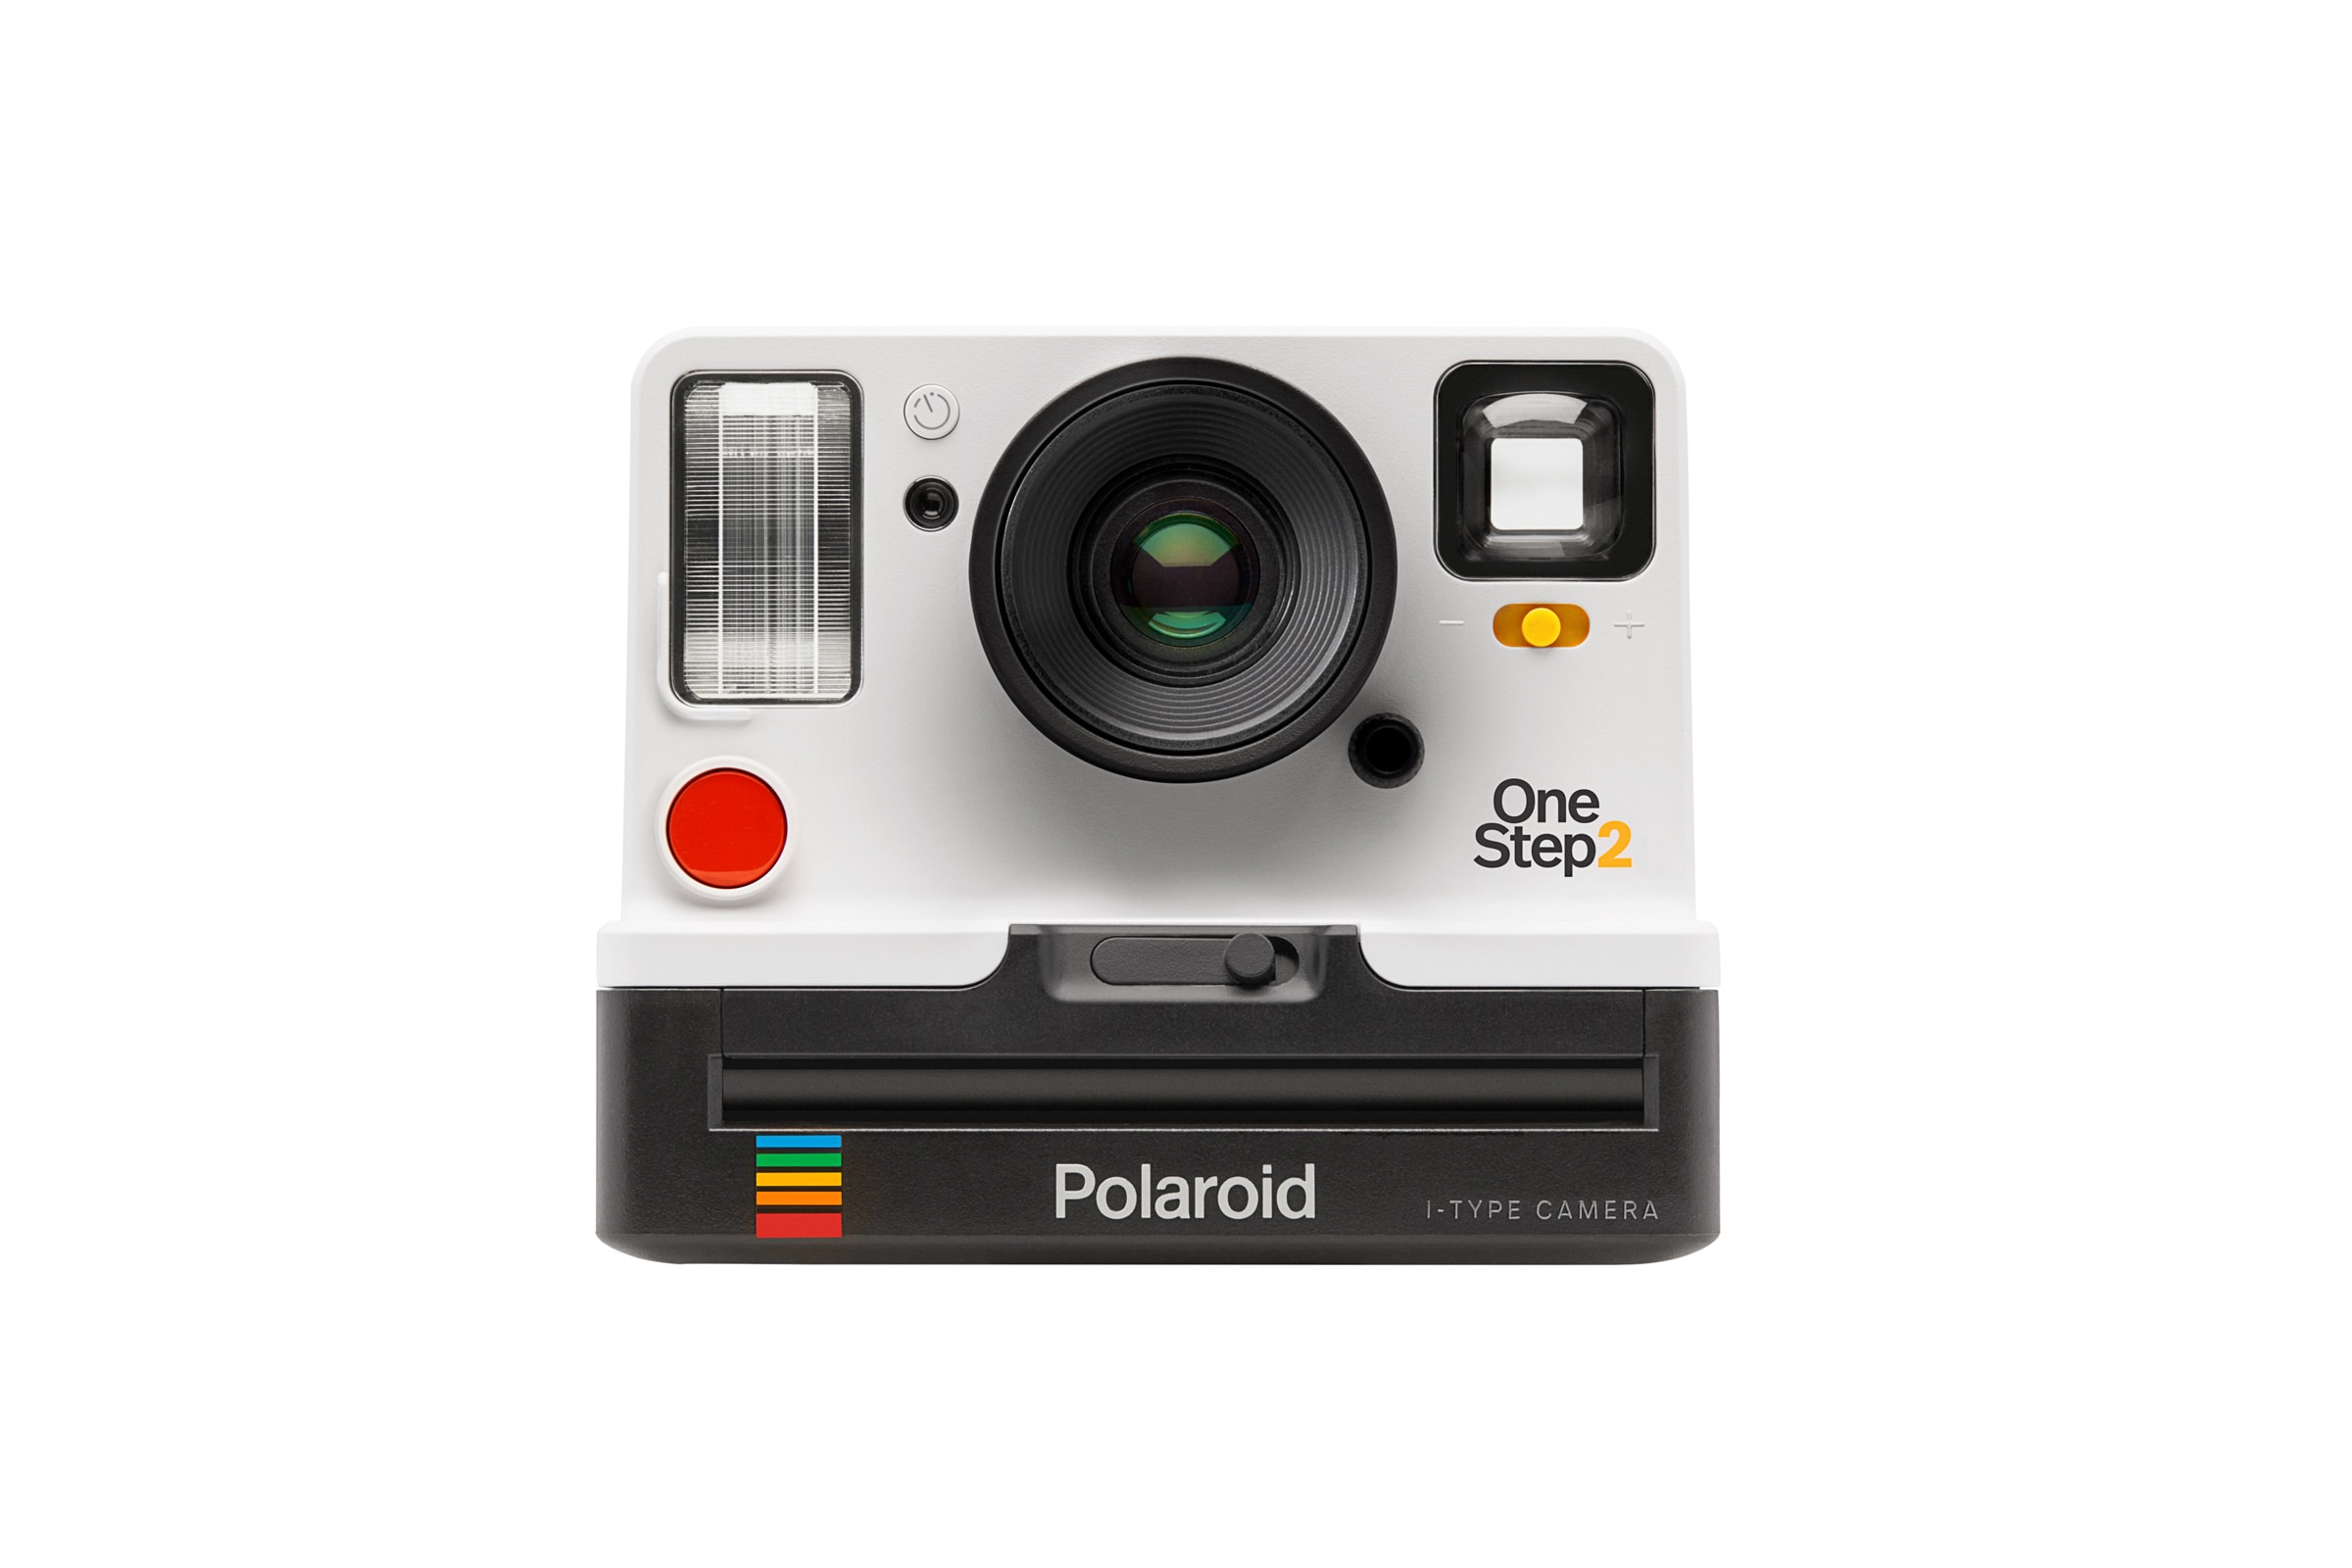 經典重現 - Polaroid Originals 元祖後繼相機 OneStep 2 登場